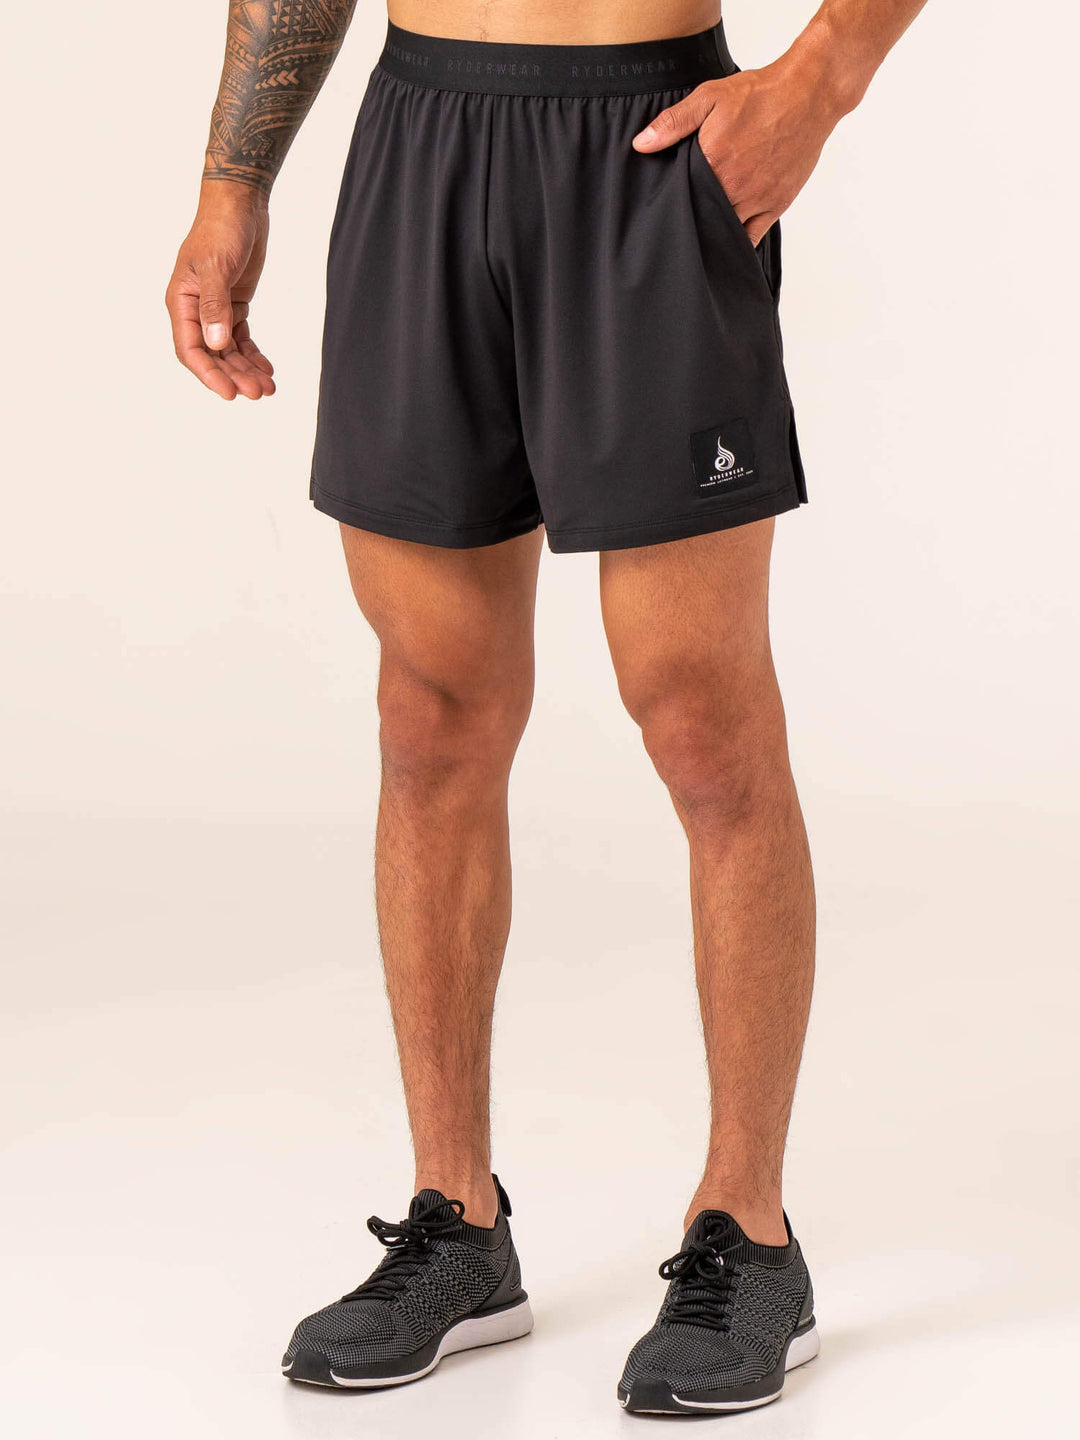 https://au.ryderwear.com/cdn/shop/products/terrain-mesh-gym-shorts-black-clothing-ryderwear-806000_1080x.jpg?v=1677118776